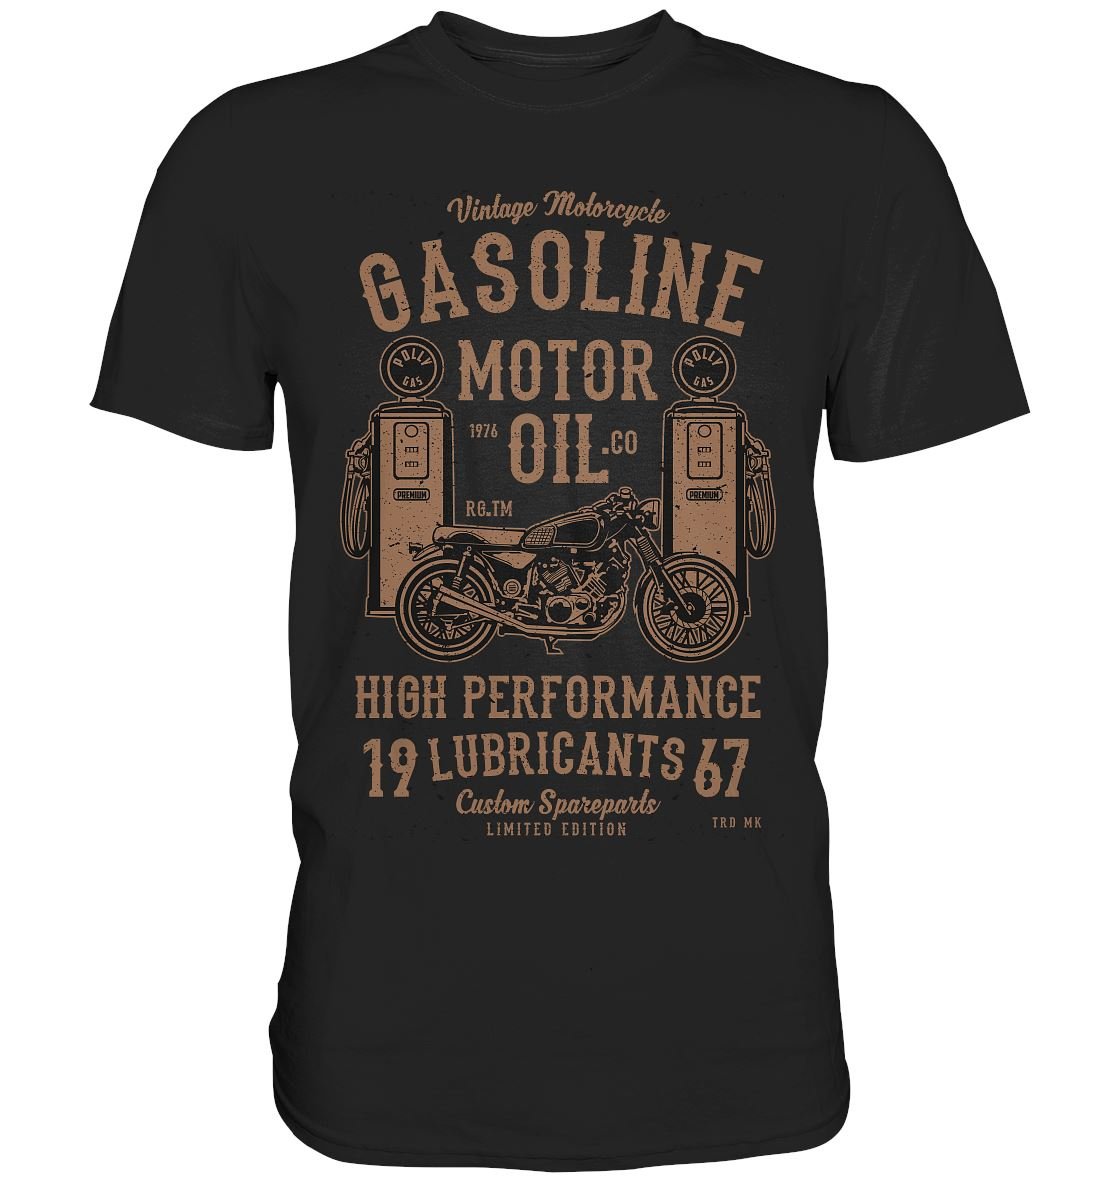 Gasoline Motor Oil - Premium Shirt - BINYA